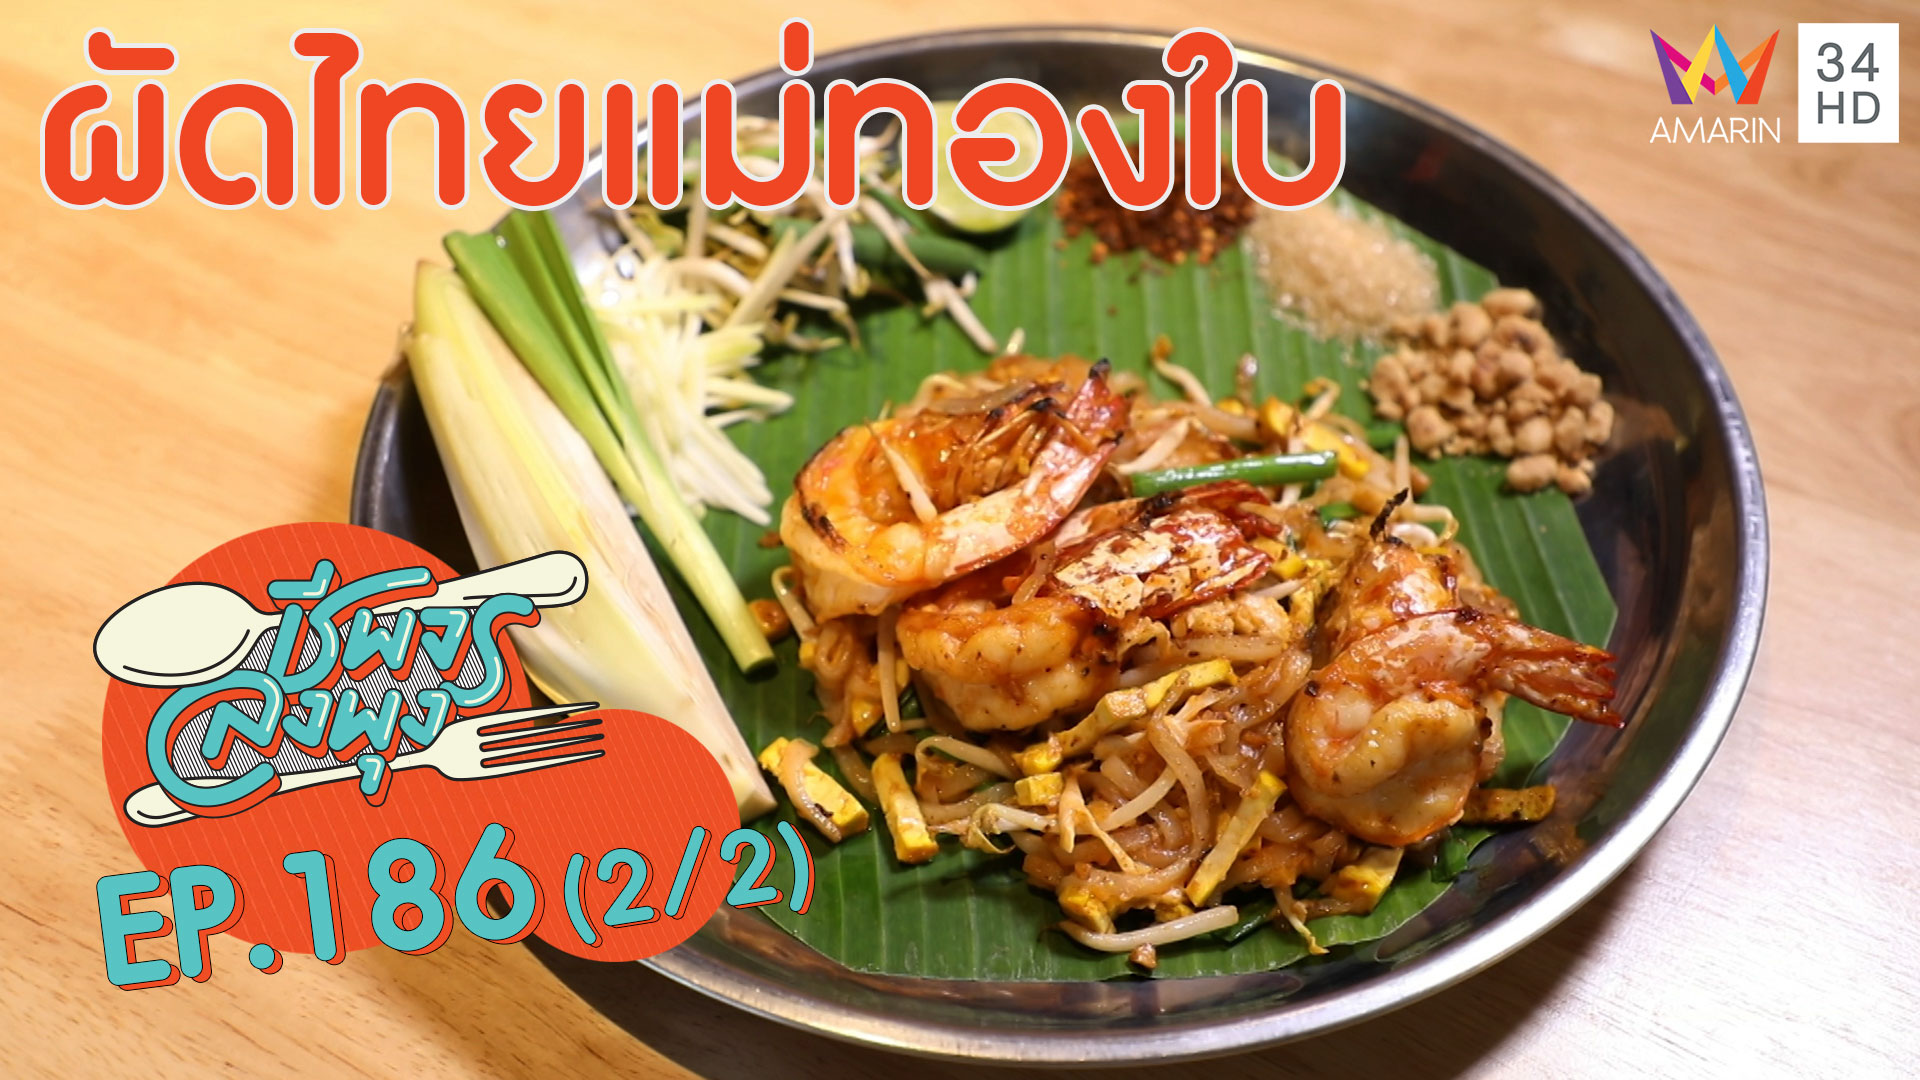 ชีพจรลงพุง ซีซั่น 5 | อาหารจานเดียว อิ่มง่าย อร่อยด้วย @"ร้านผัดไทยแม่ทองใบ" | 27 ธ.ค.62 (2/2)